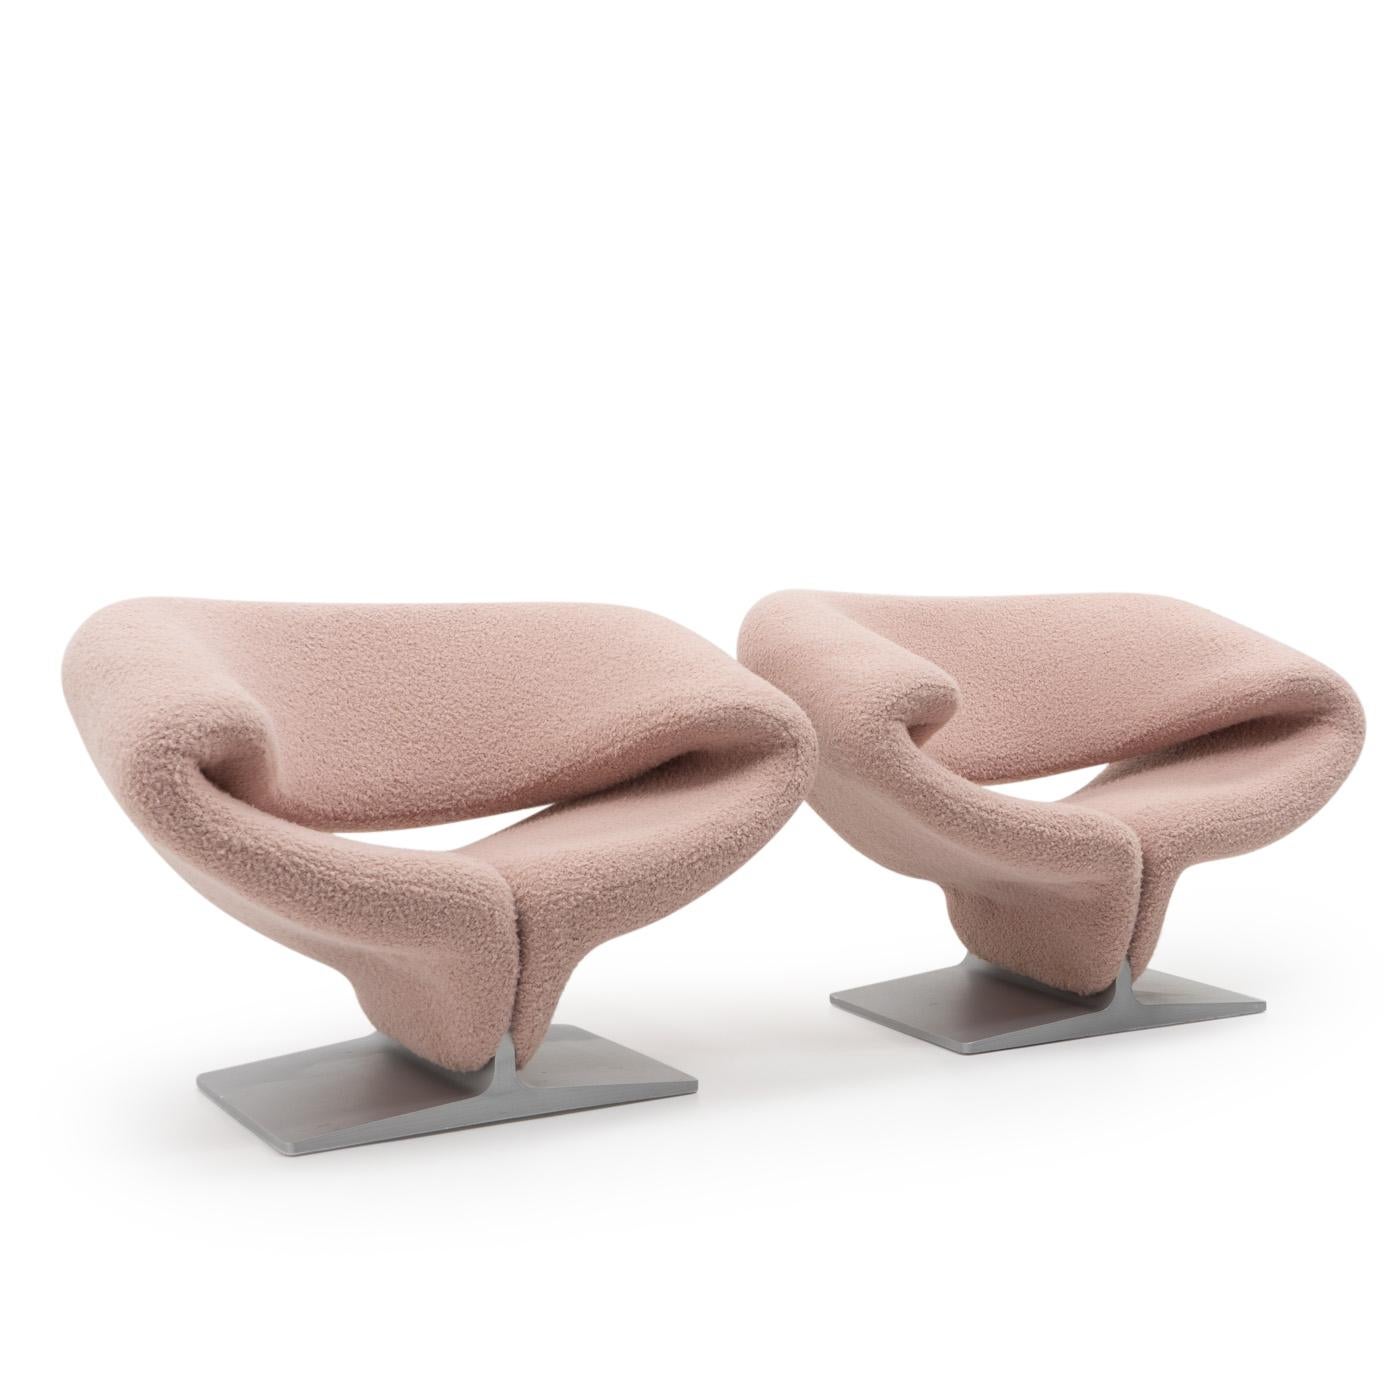 La chaise Ribbon, avec sa silhouette caractéristique, est un meuble emblématique conçu en 1966 par Pierre Paulin : 

Pierre Paulin est un designer français né à Paris, qui a créé ses pièces les plus connues en collaboration avec Artifort (Pays-Bas).